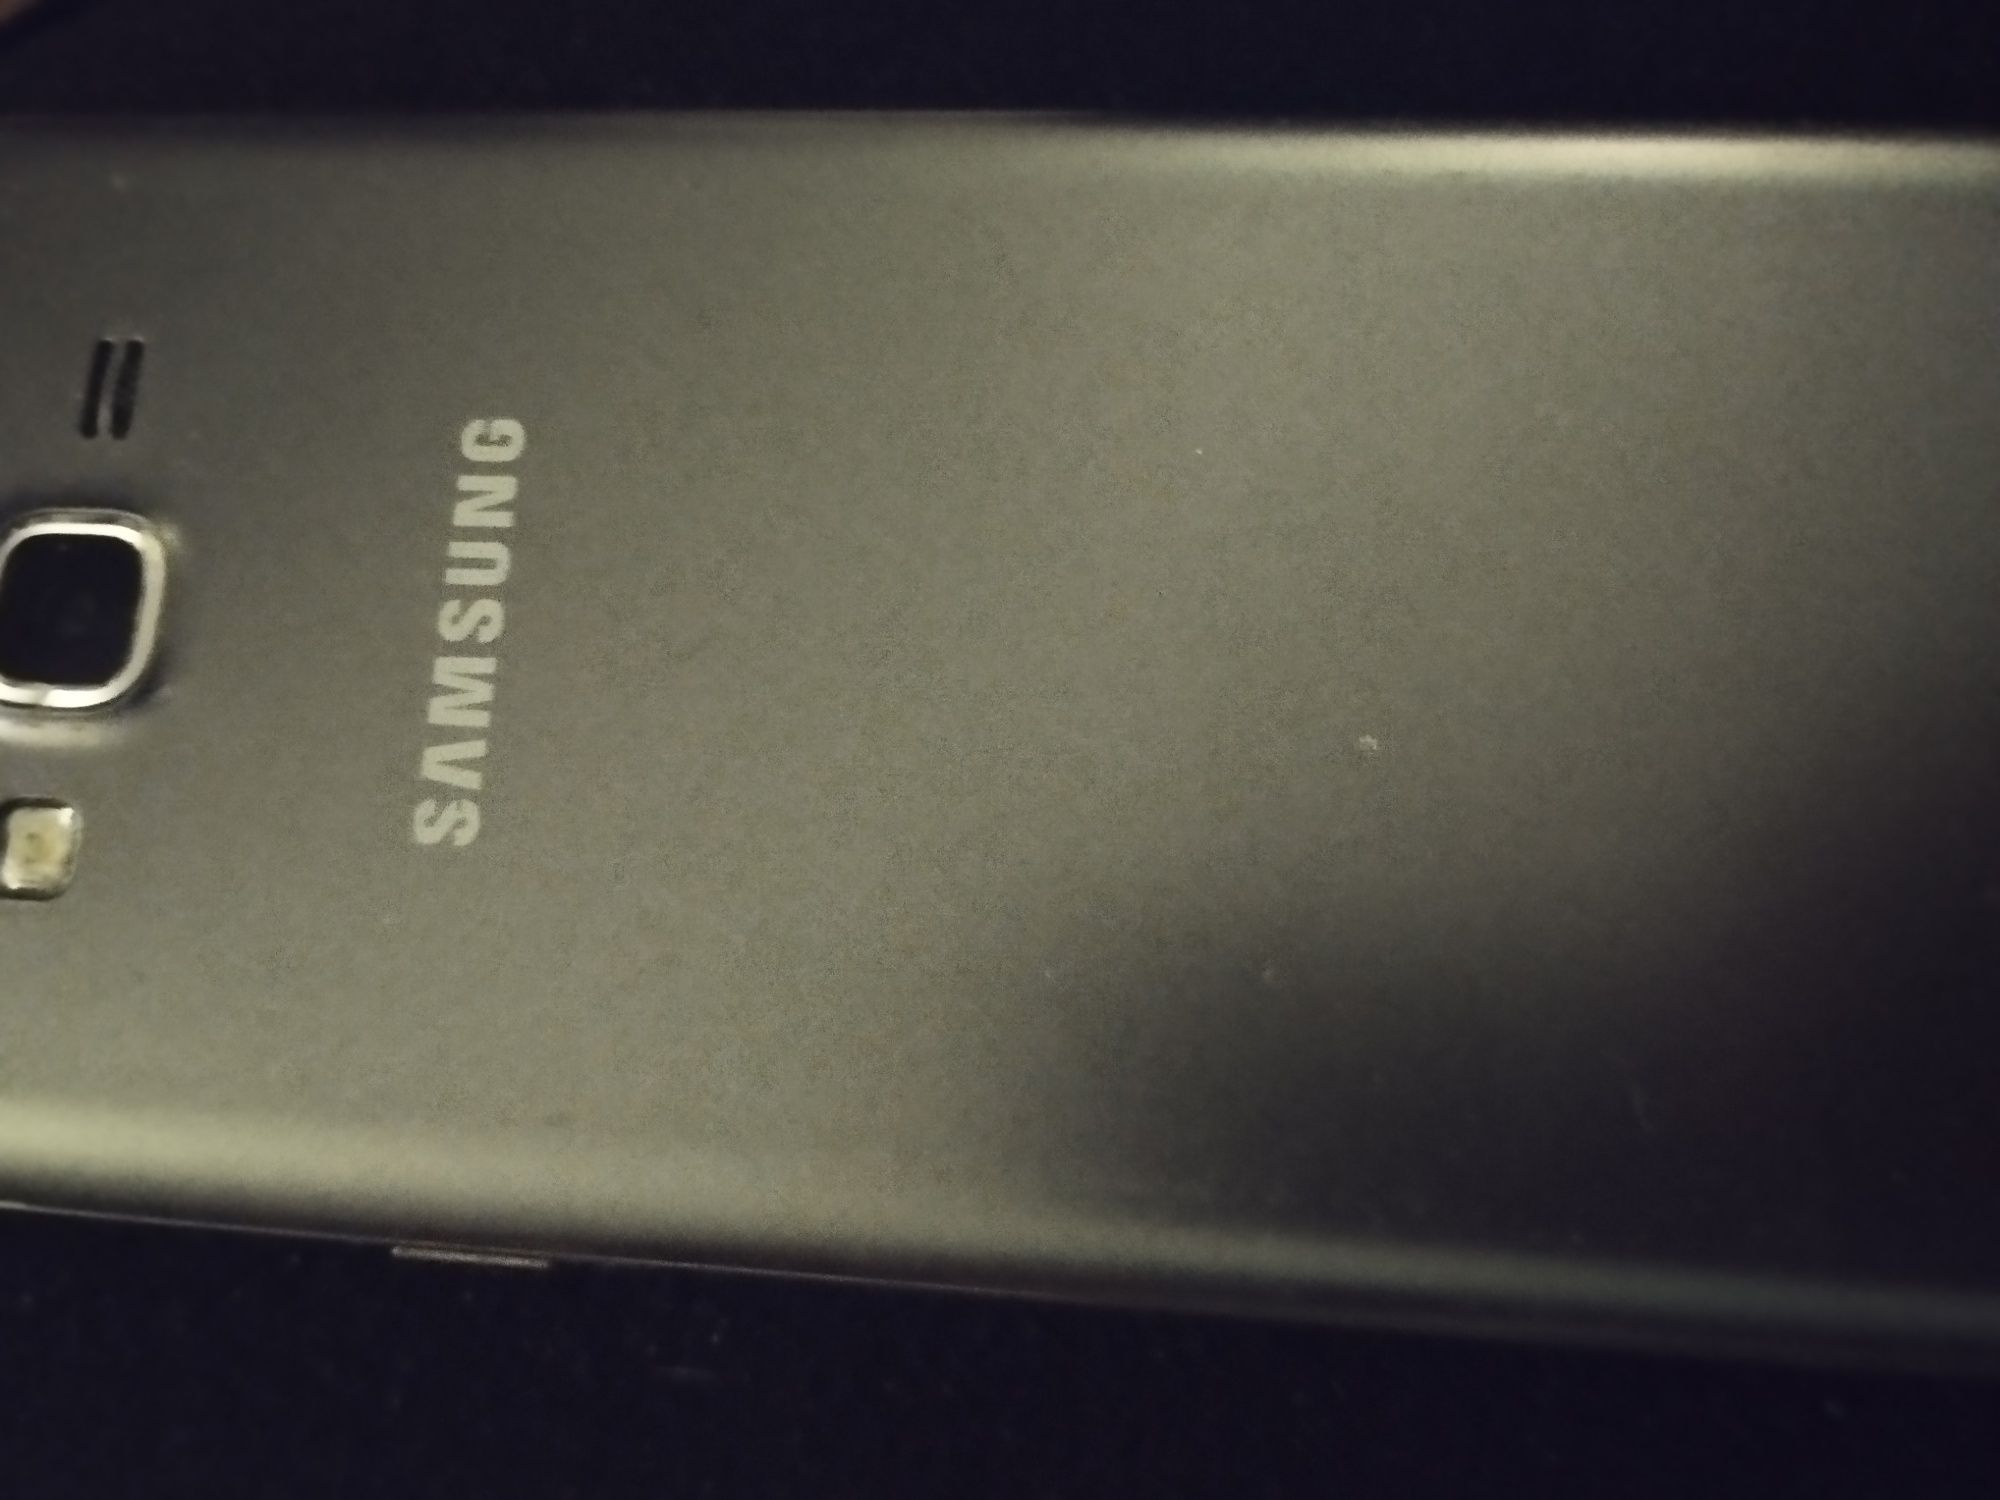 Ideał Samsung Galaxy Grand Prime z ładowarką i etui jak nowy. Wszystki